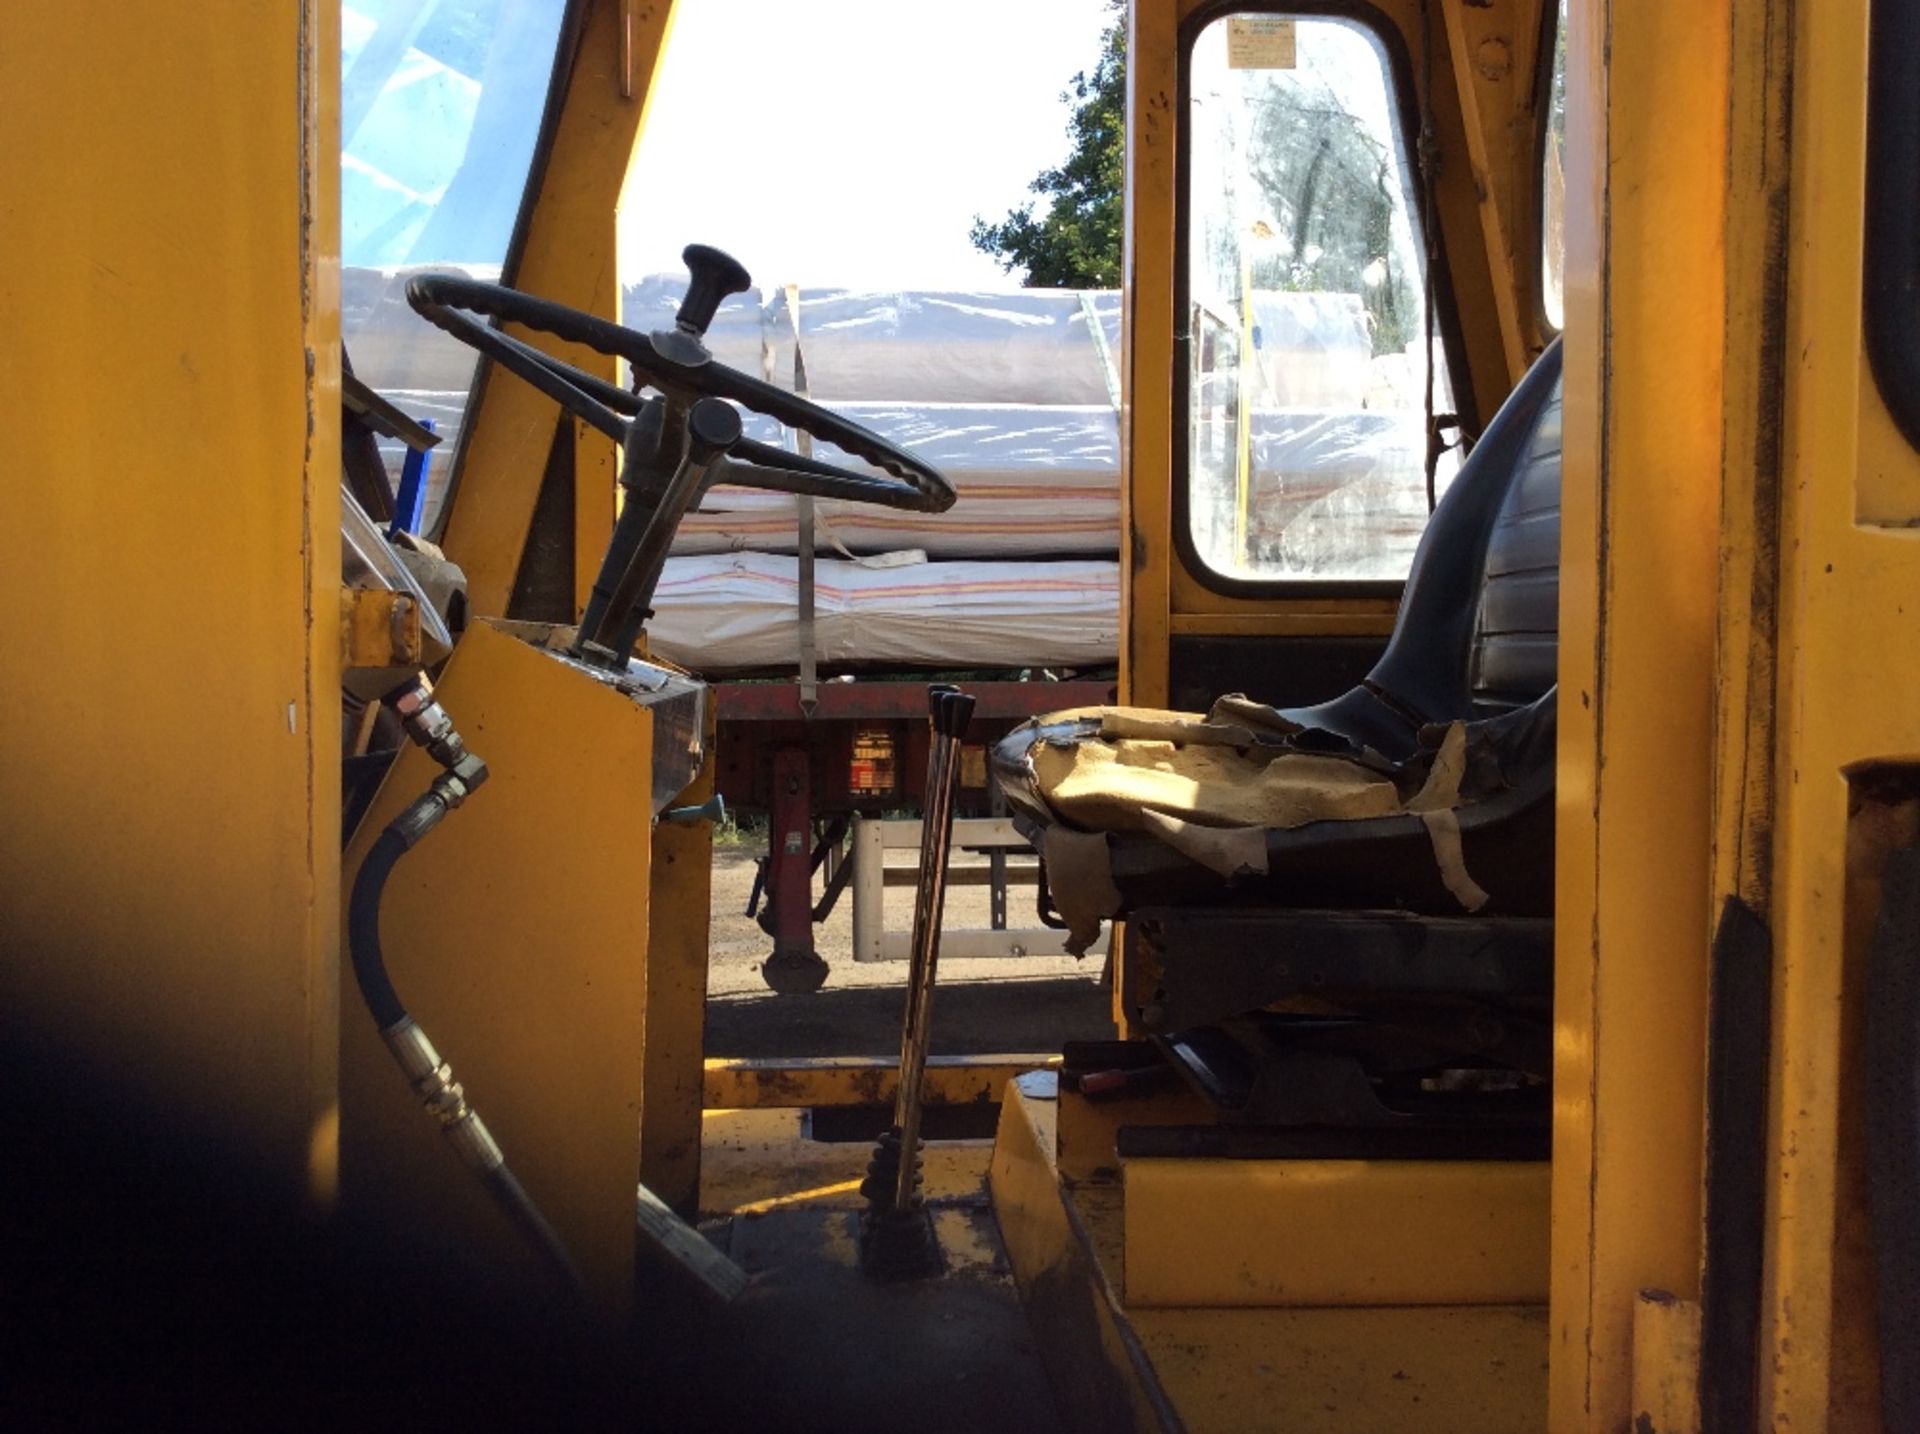 Make: Coventry  Model: Climax
NV 7t Diesel Forklift, On board weigher, Side Shift, 8ft forks - Image 8 of 8